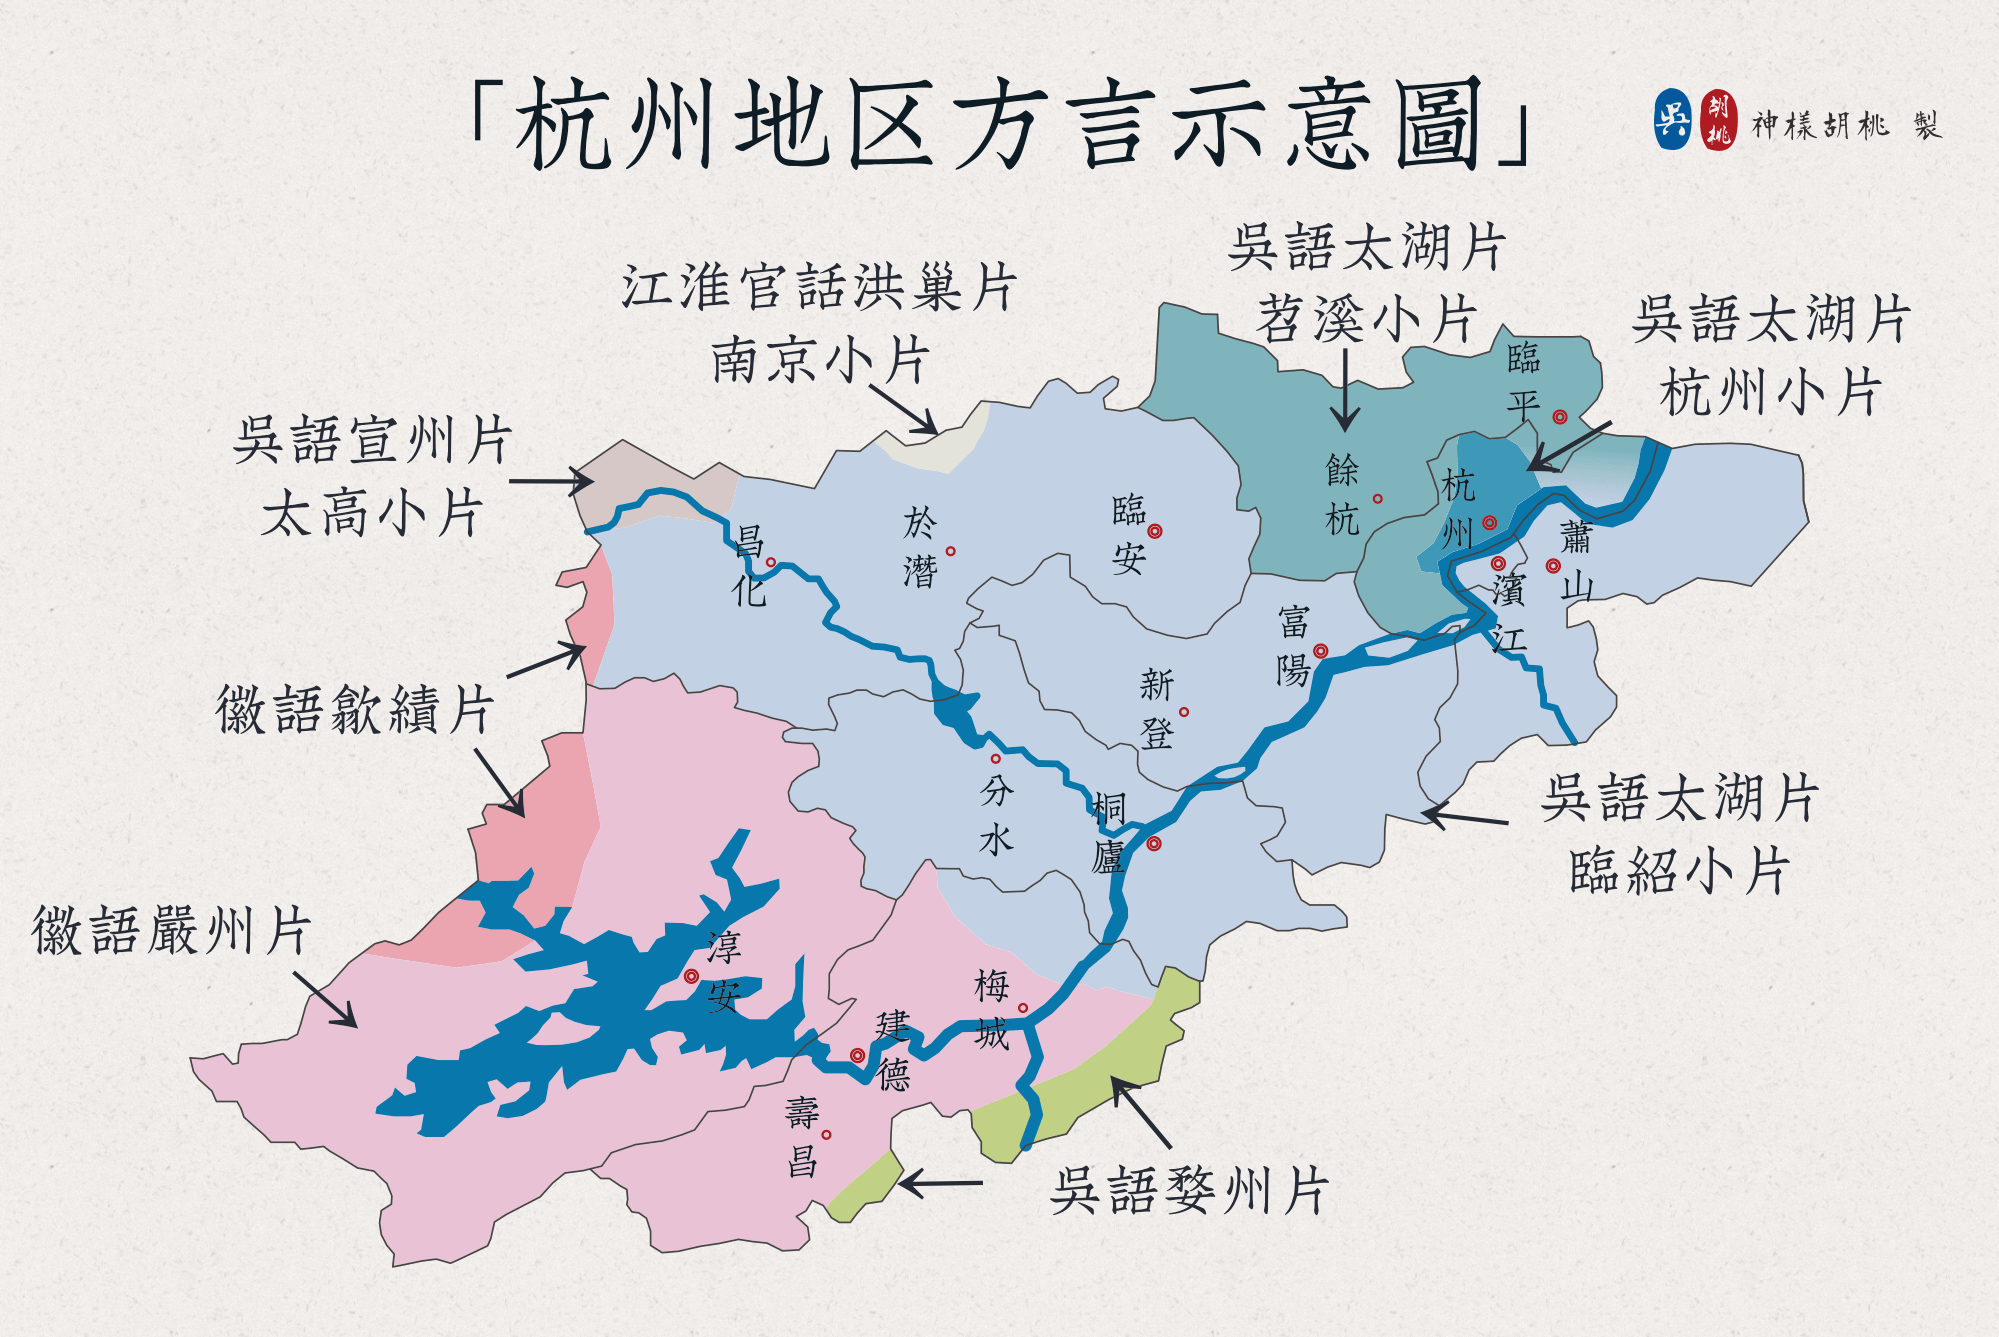 杭州方言地图@神样胡桃今杭州市域中方言在汉语中跨两个大的方言区:一